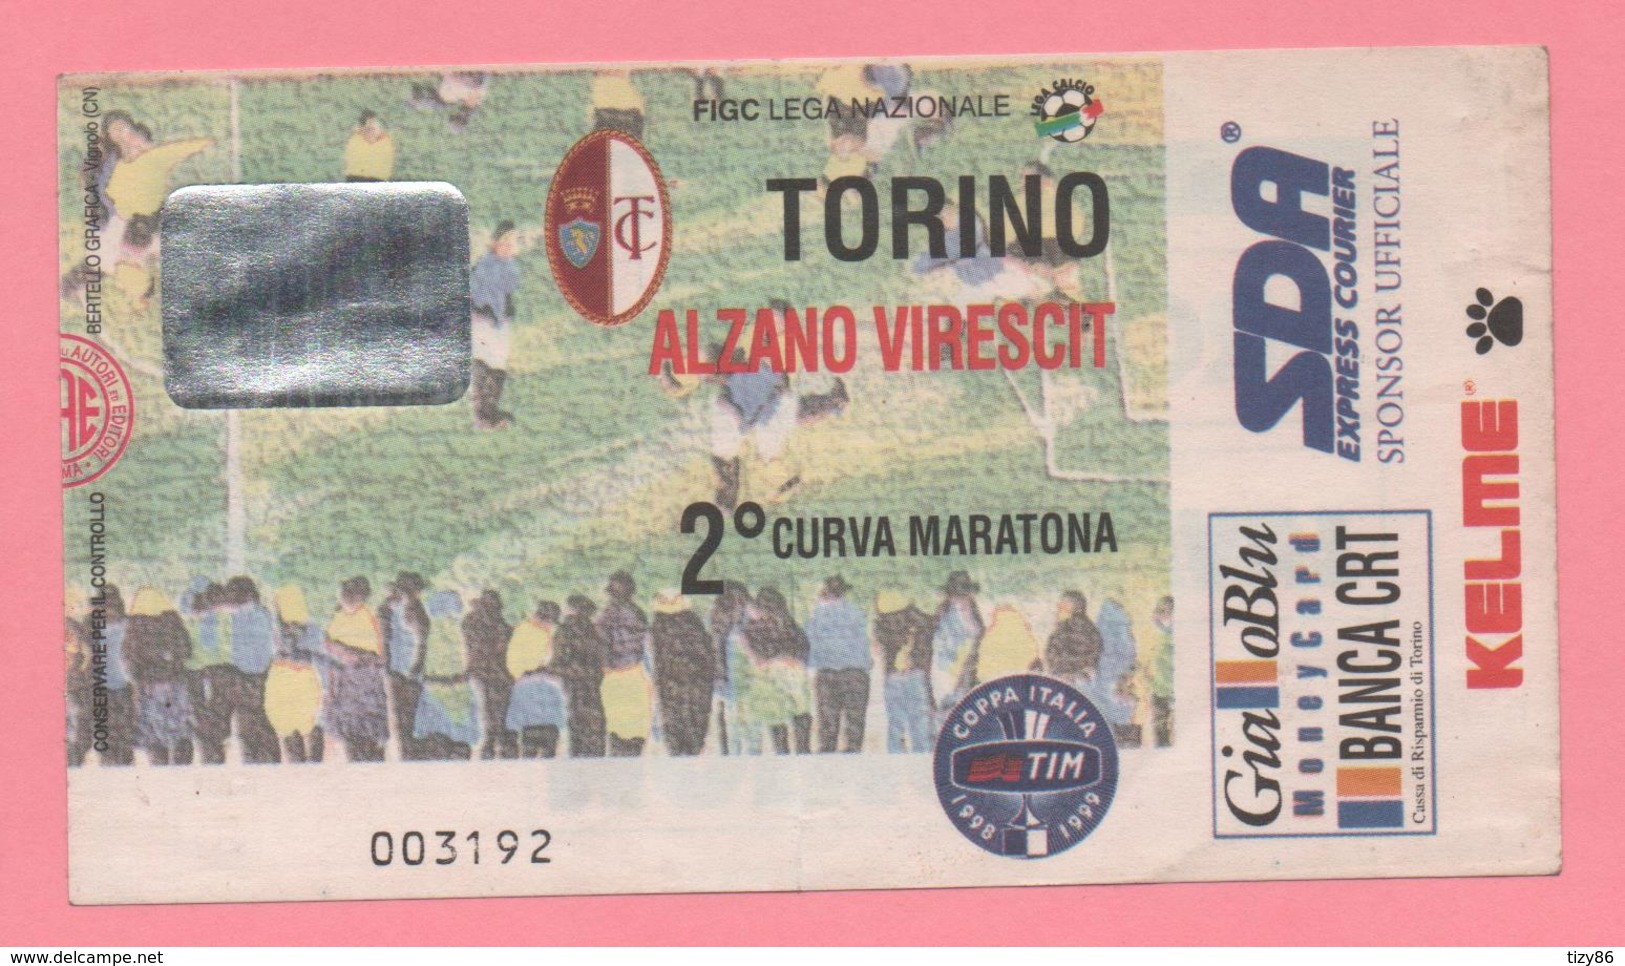 Biglietto D'ingresso Torino Alzano Virescit - Toegangskaarten